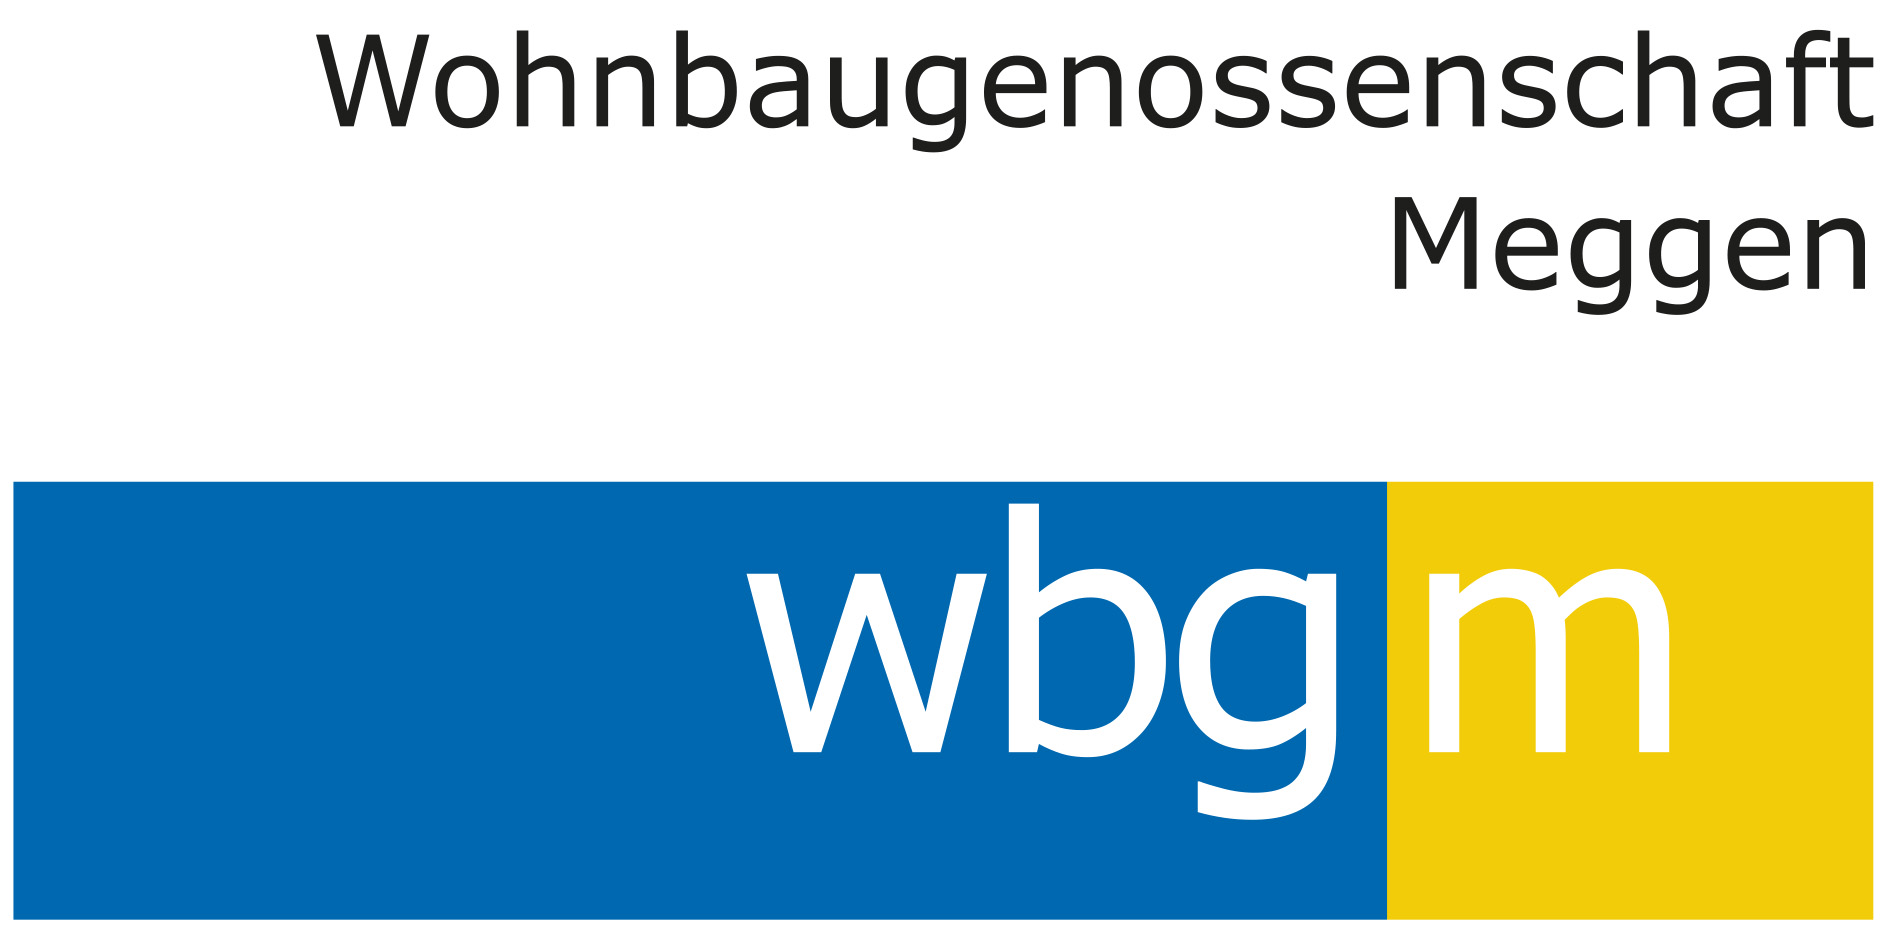 Logo - Wohnbaugenossenschaft Meggen wbgm